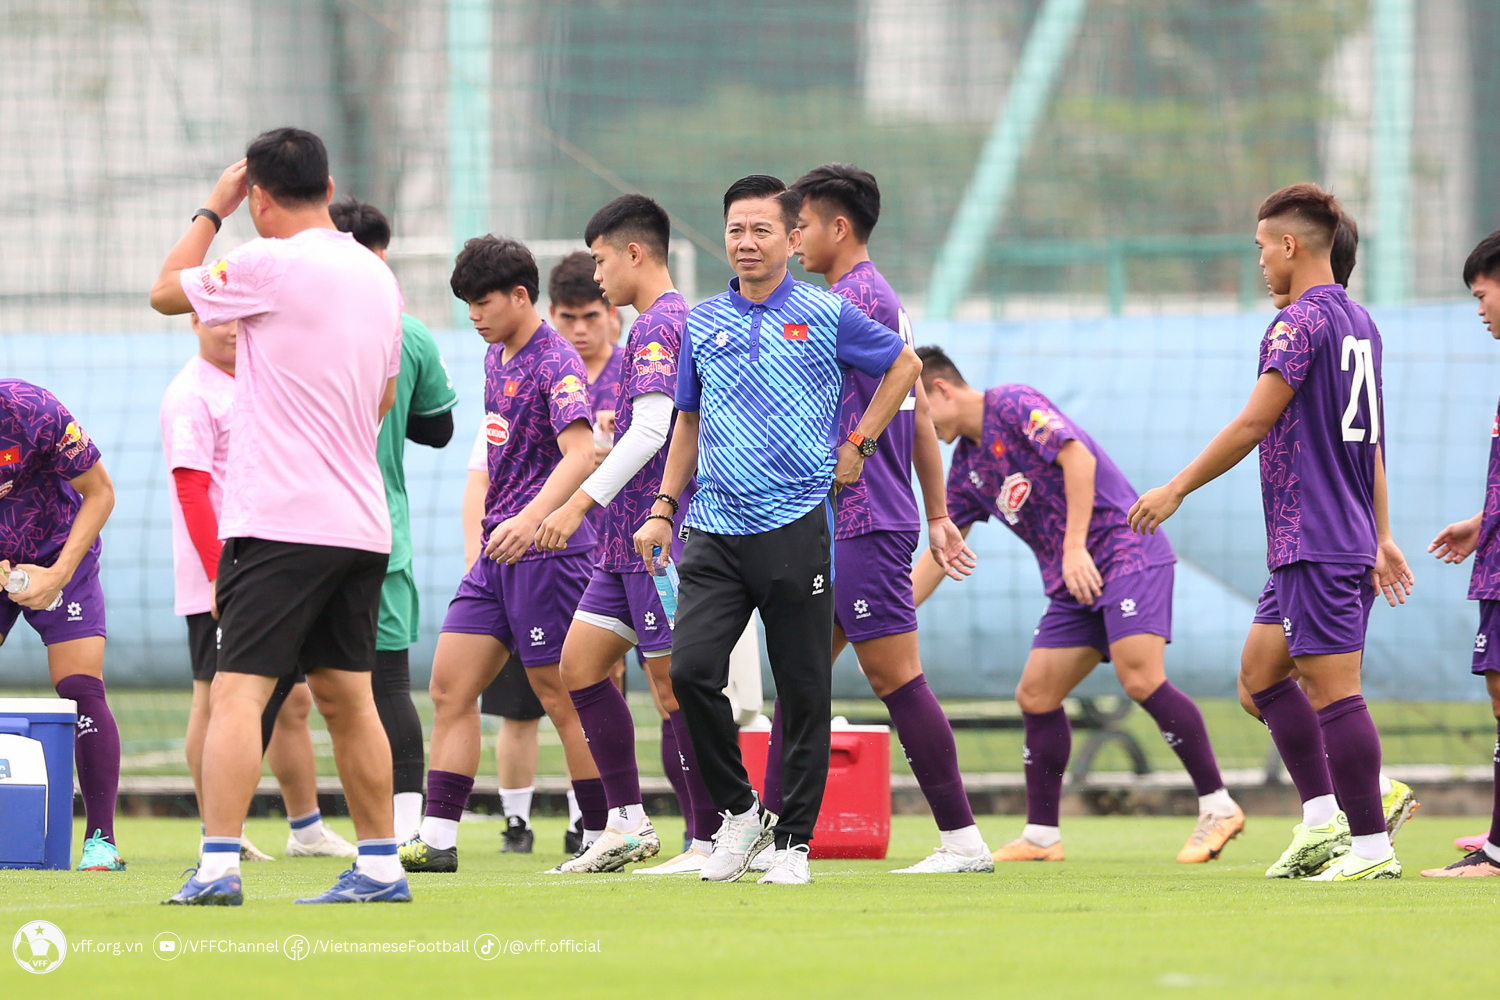 HLV Hoàng Anh Tuấn: "Nhiệm vụ vượt qua vòng bảng không phải quá sức với U23 Việt Nam"- Ảnh 1.